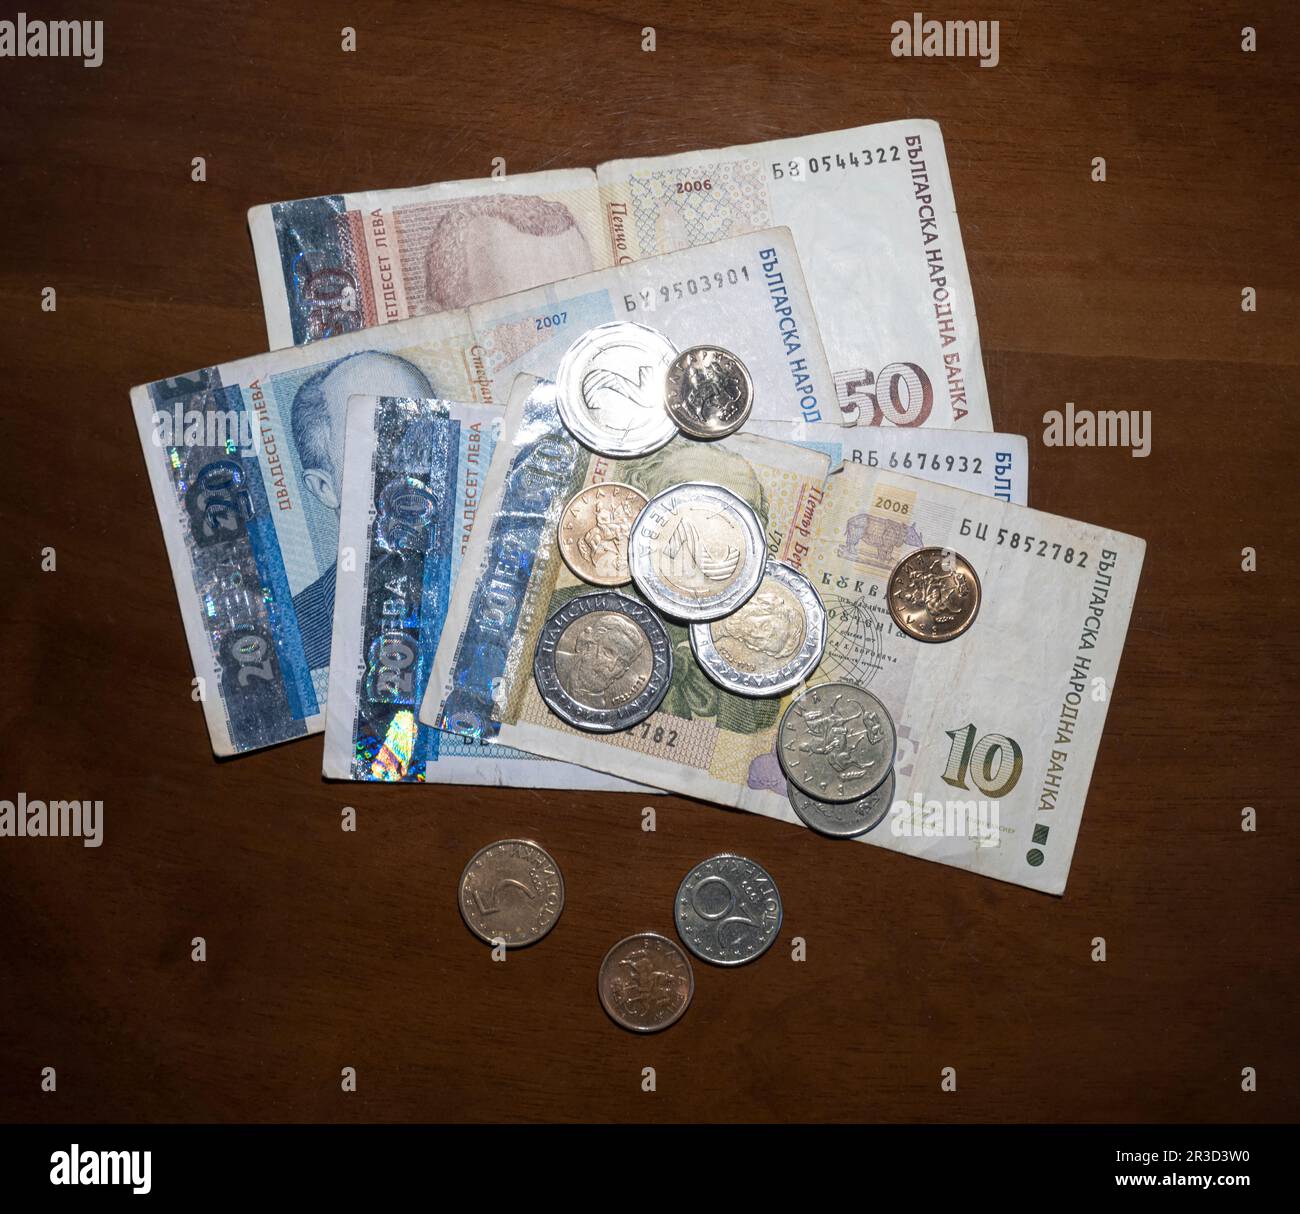 Quelques billets de la devise bulgare Lev en main Banque D'Images